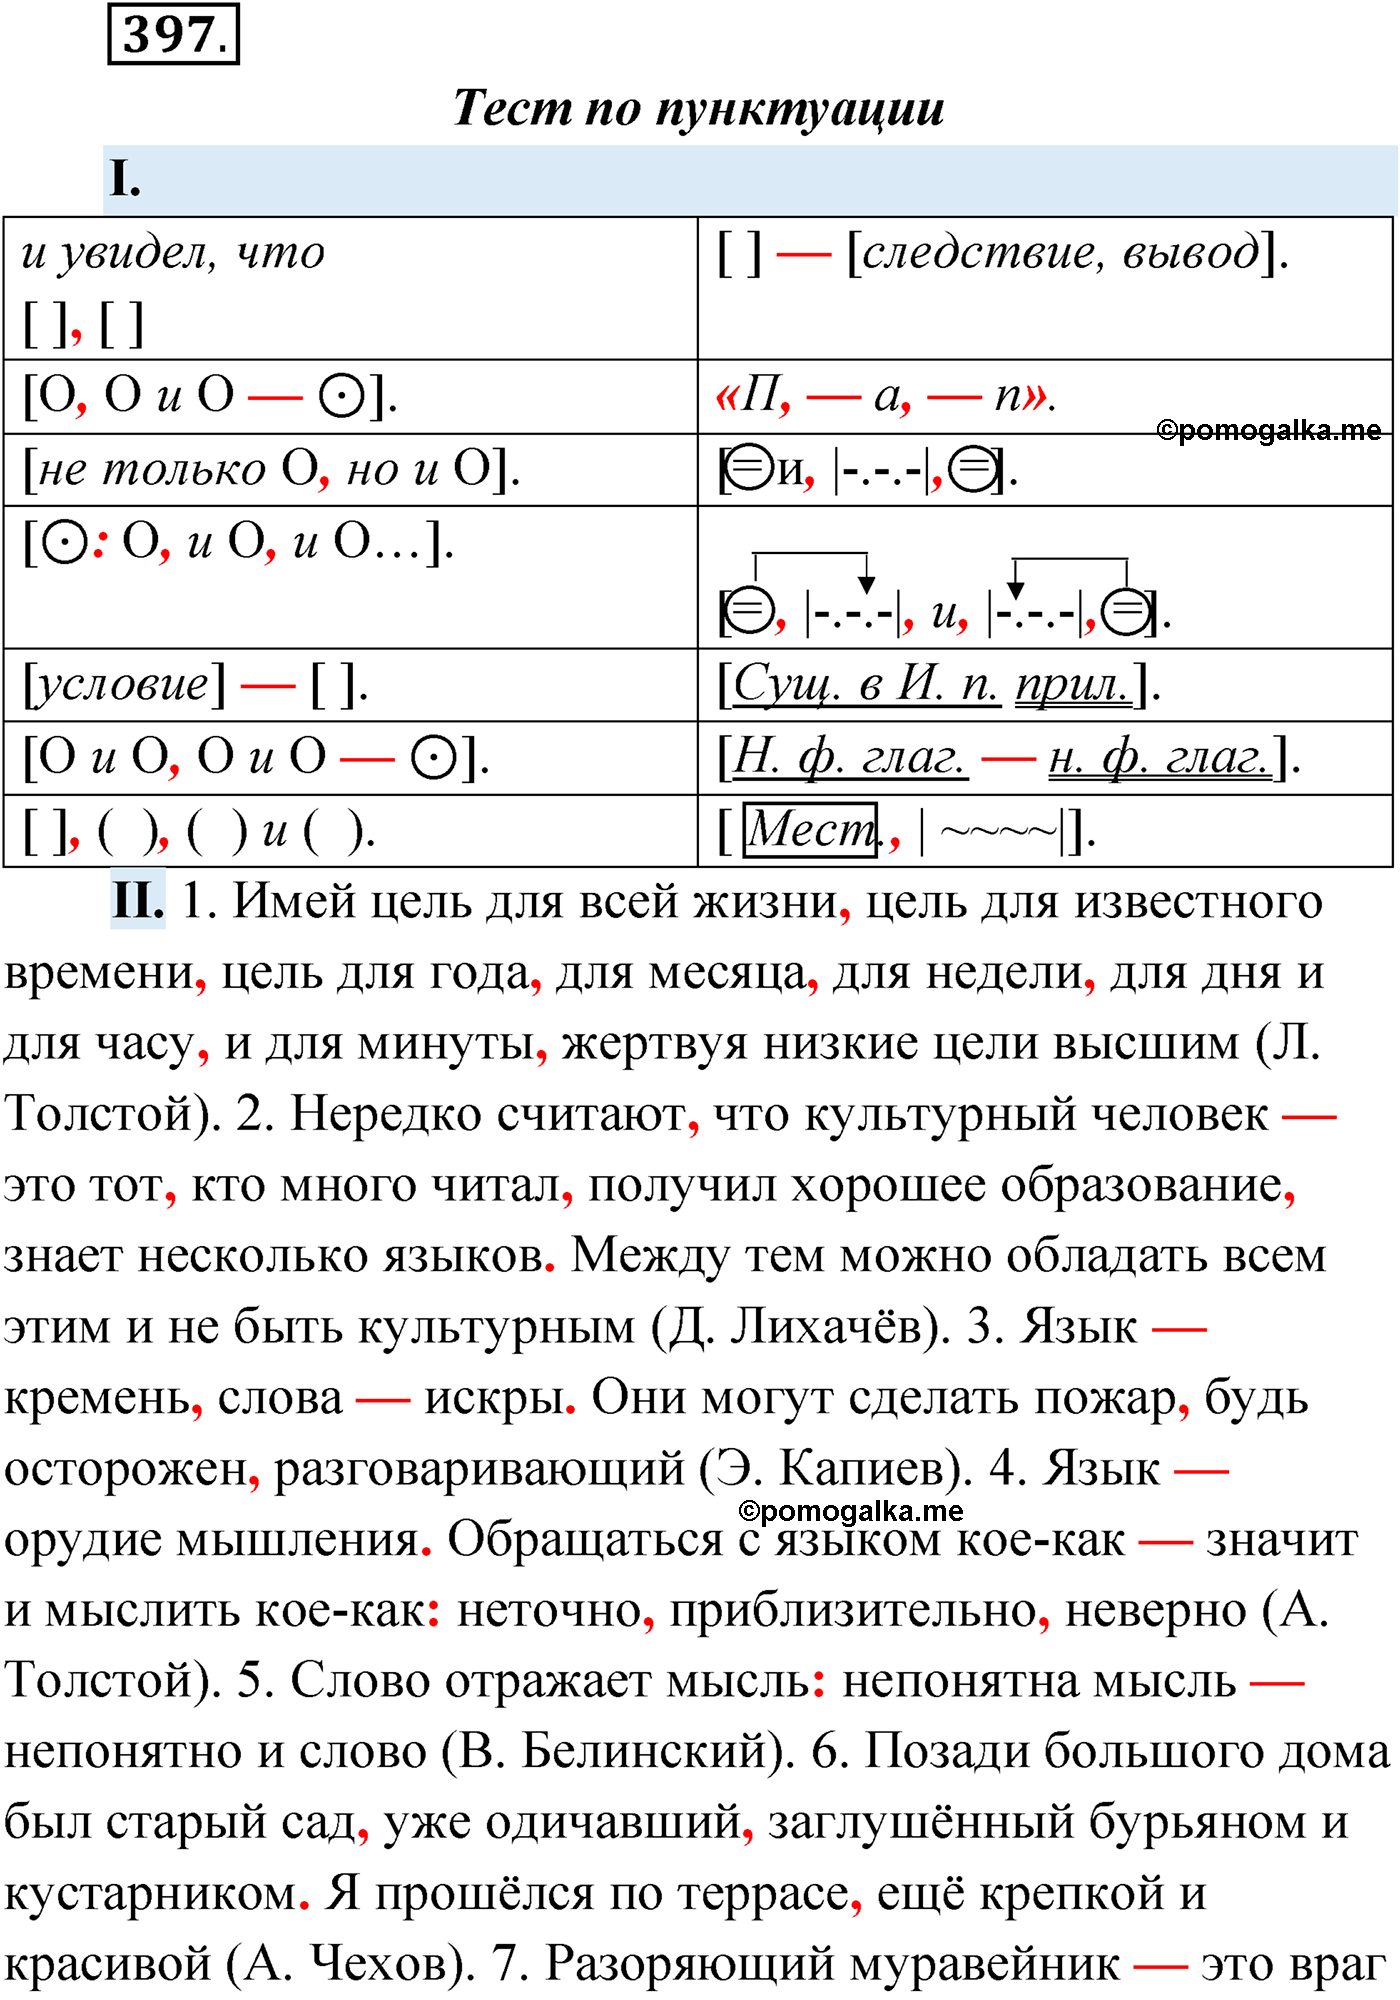 упражнение №397 русский язык 9 класс Мурина 2019 год